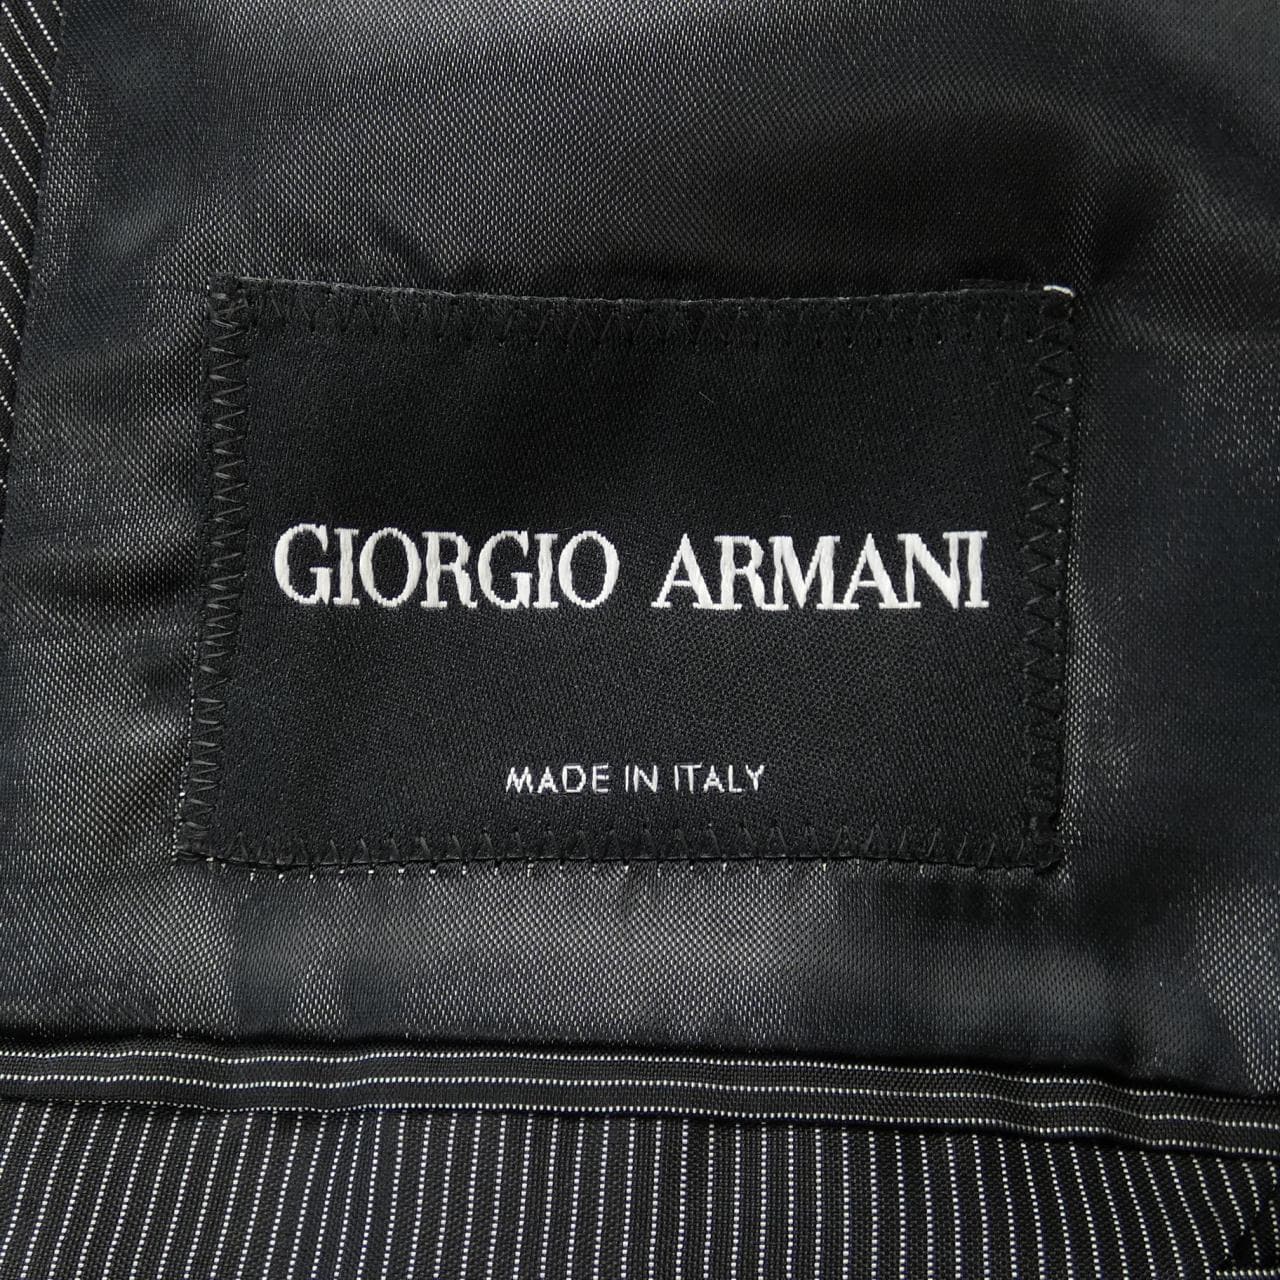 Giorgio Armani GIORGIO ARMANI jacket